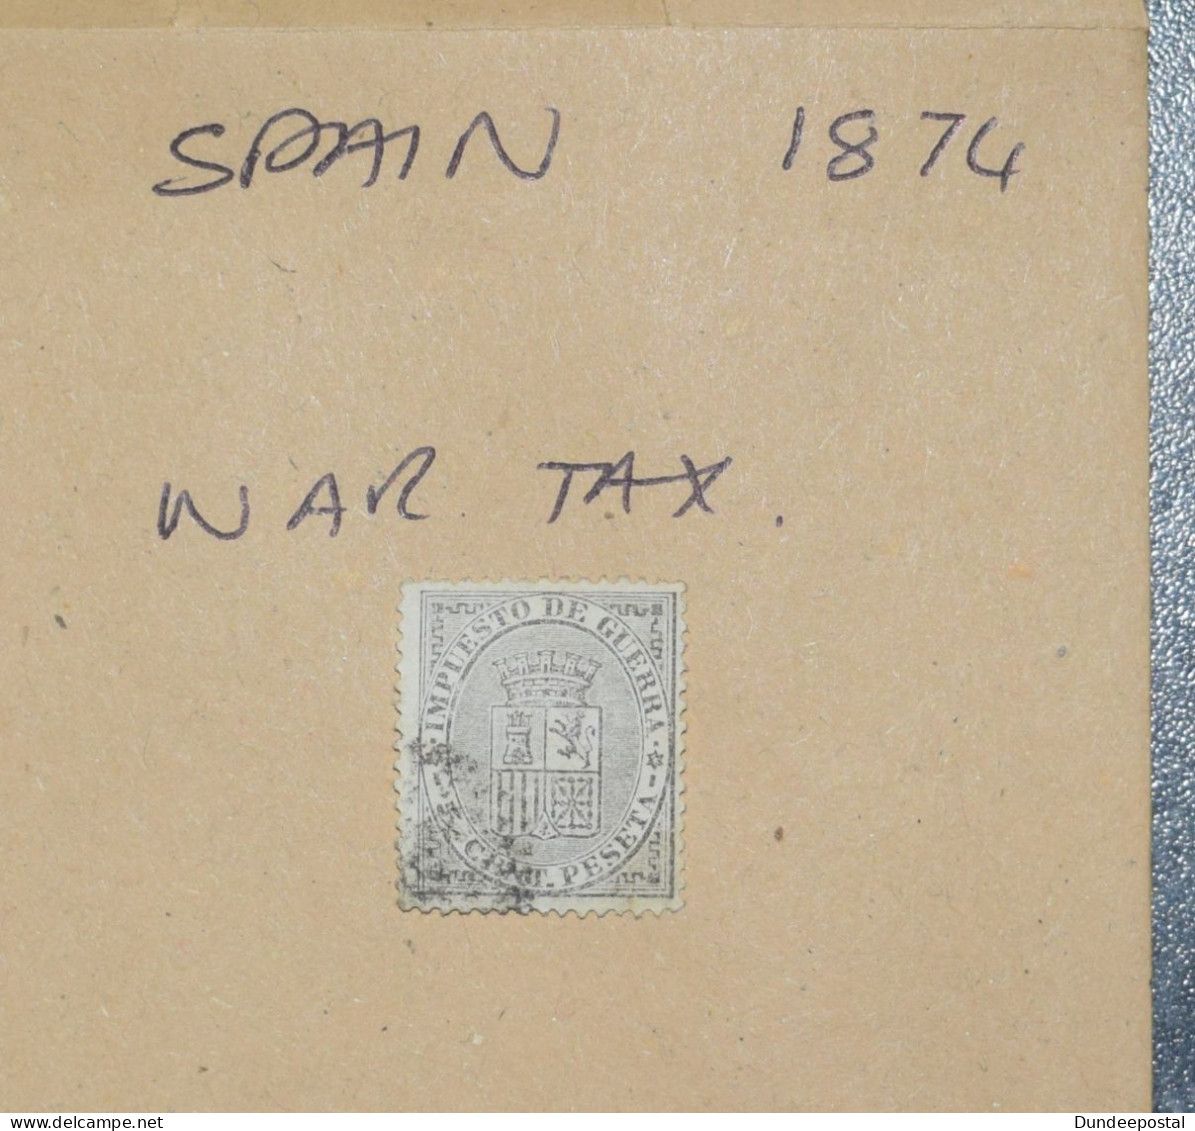 SPAIN  STAMPS  War Tax  1874  ~~L@@K~~ - Gebruikt